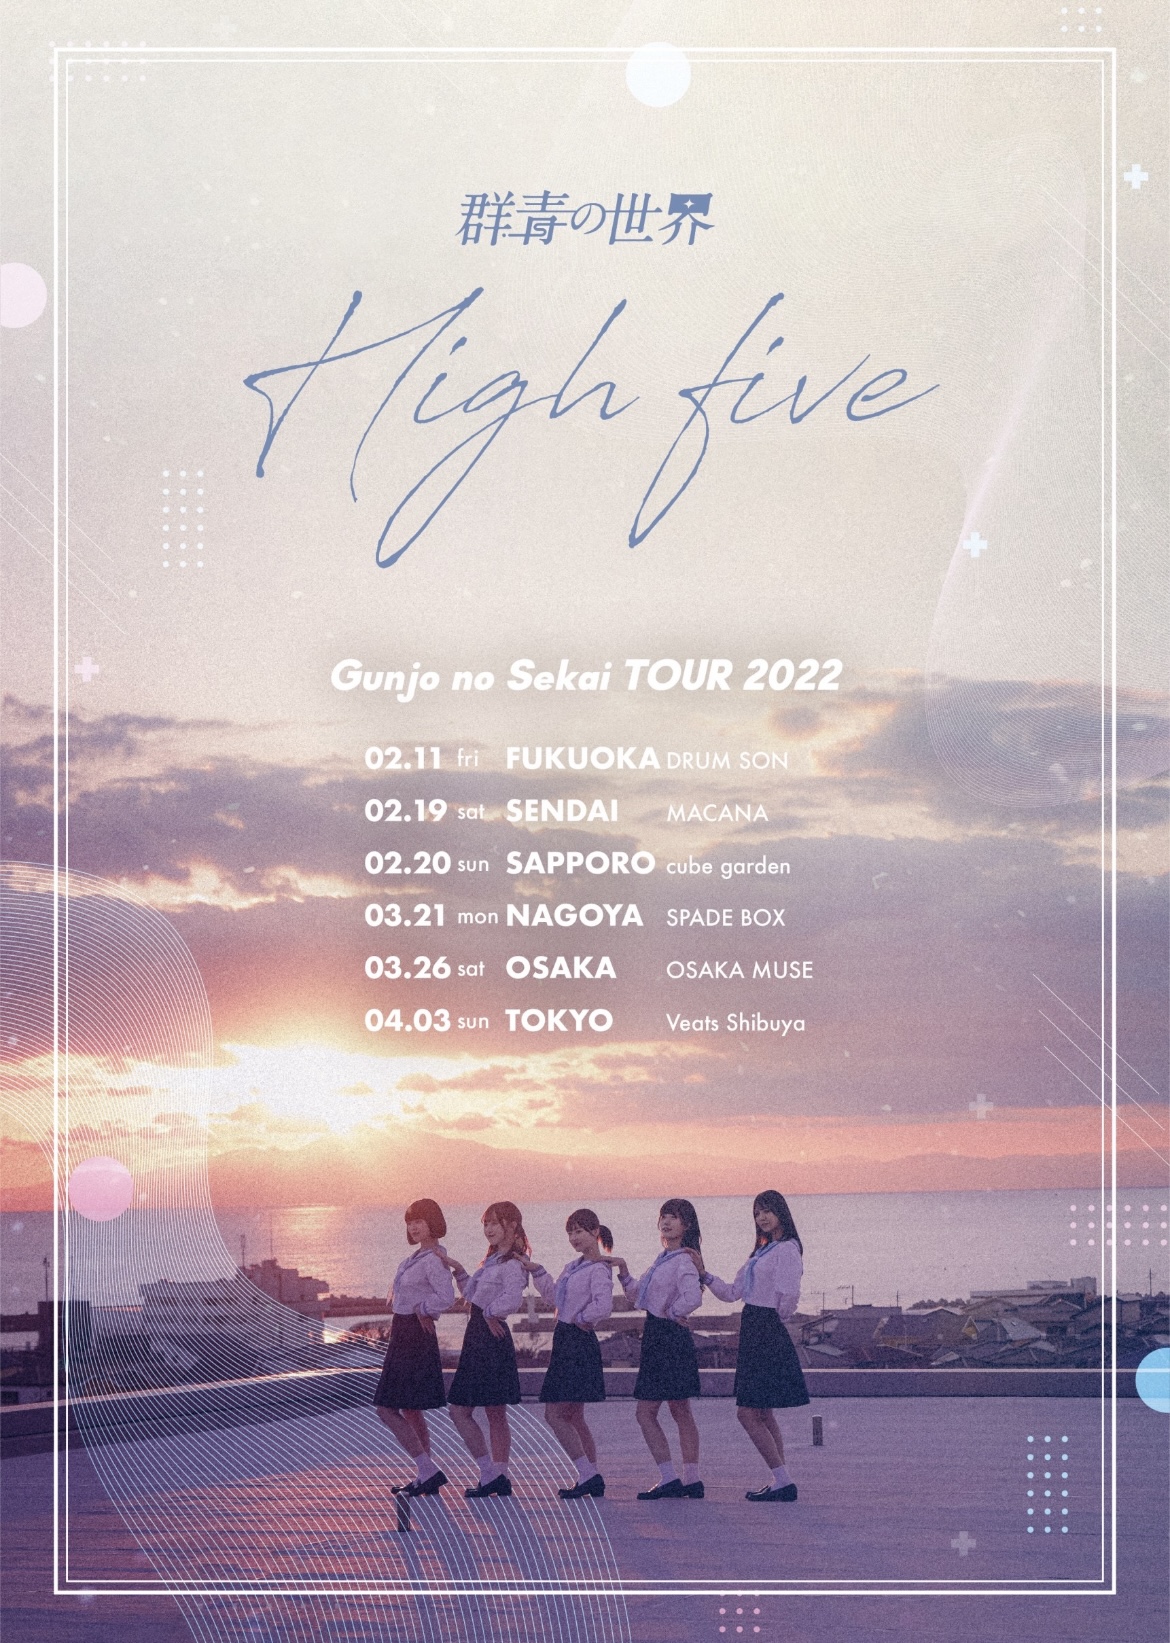 群青の世界 全国ツアー「High five」福岡公演